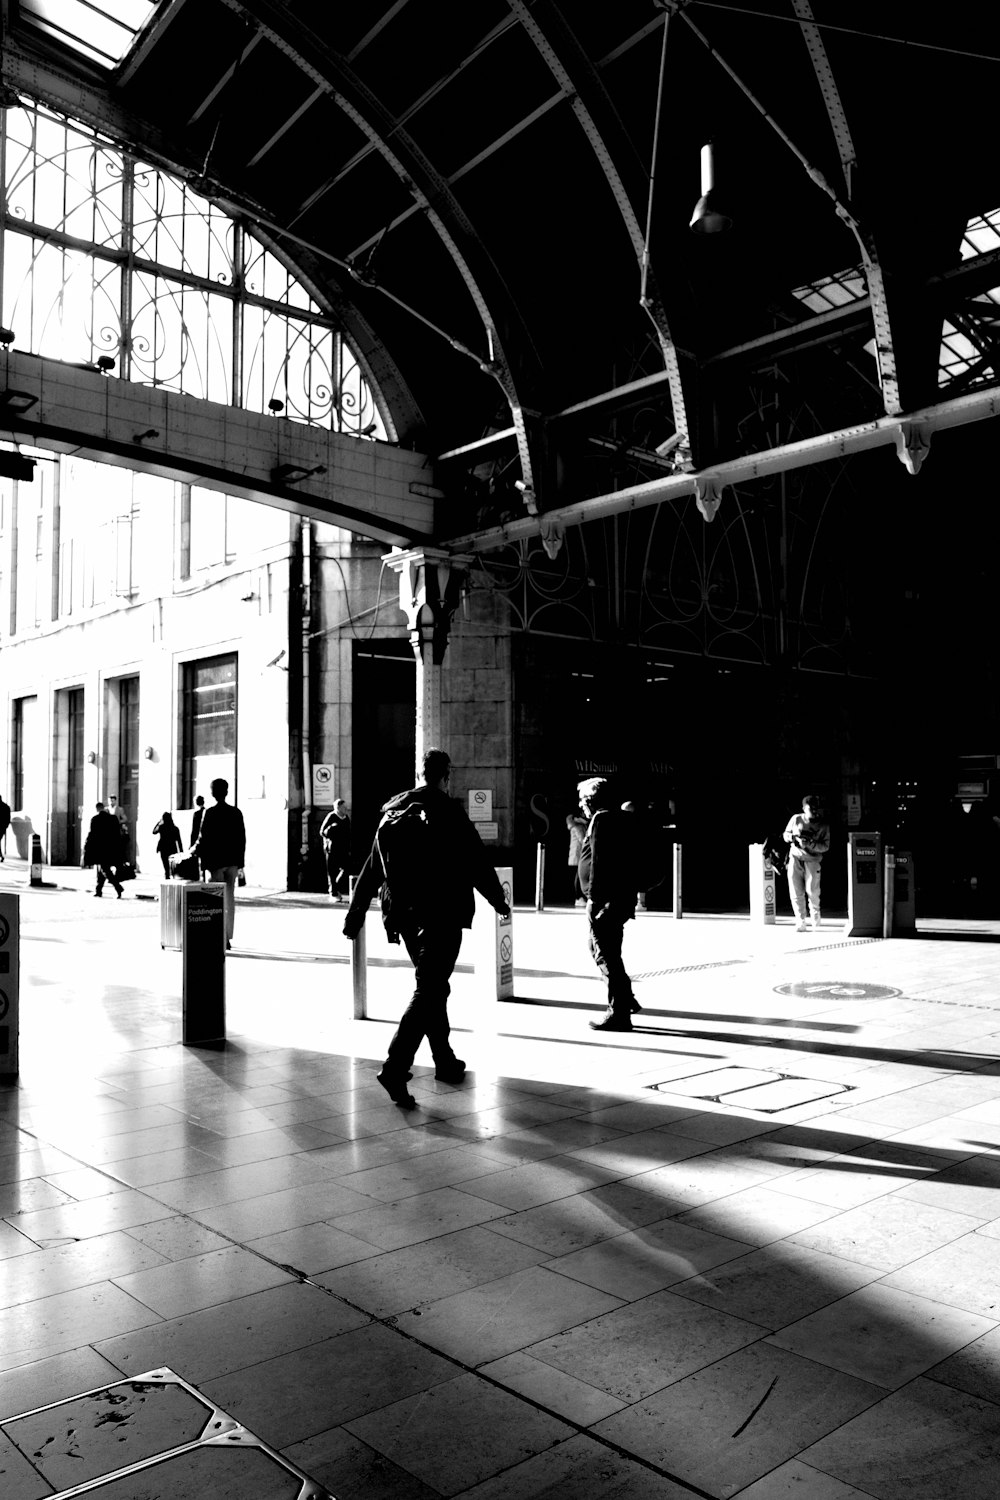 Una foto en blanco y negro de personas caminando en una estación de tren